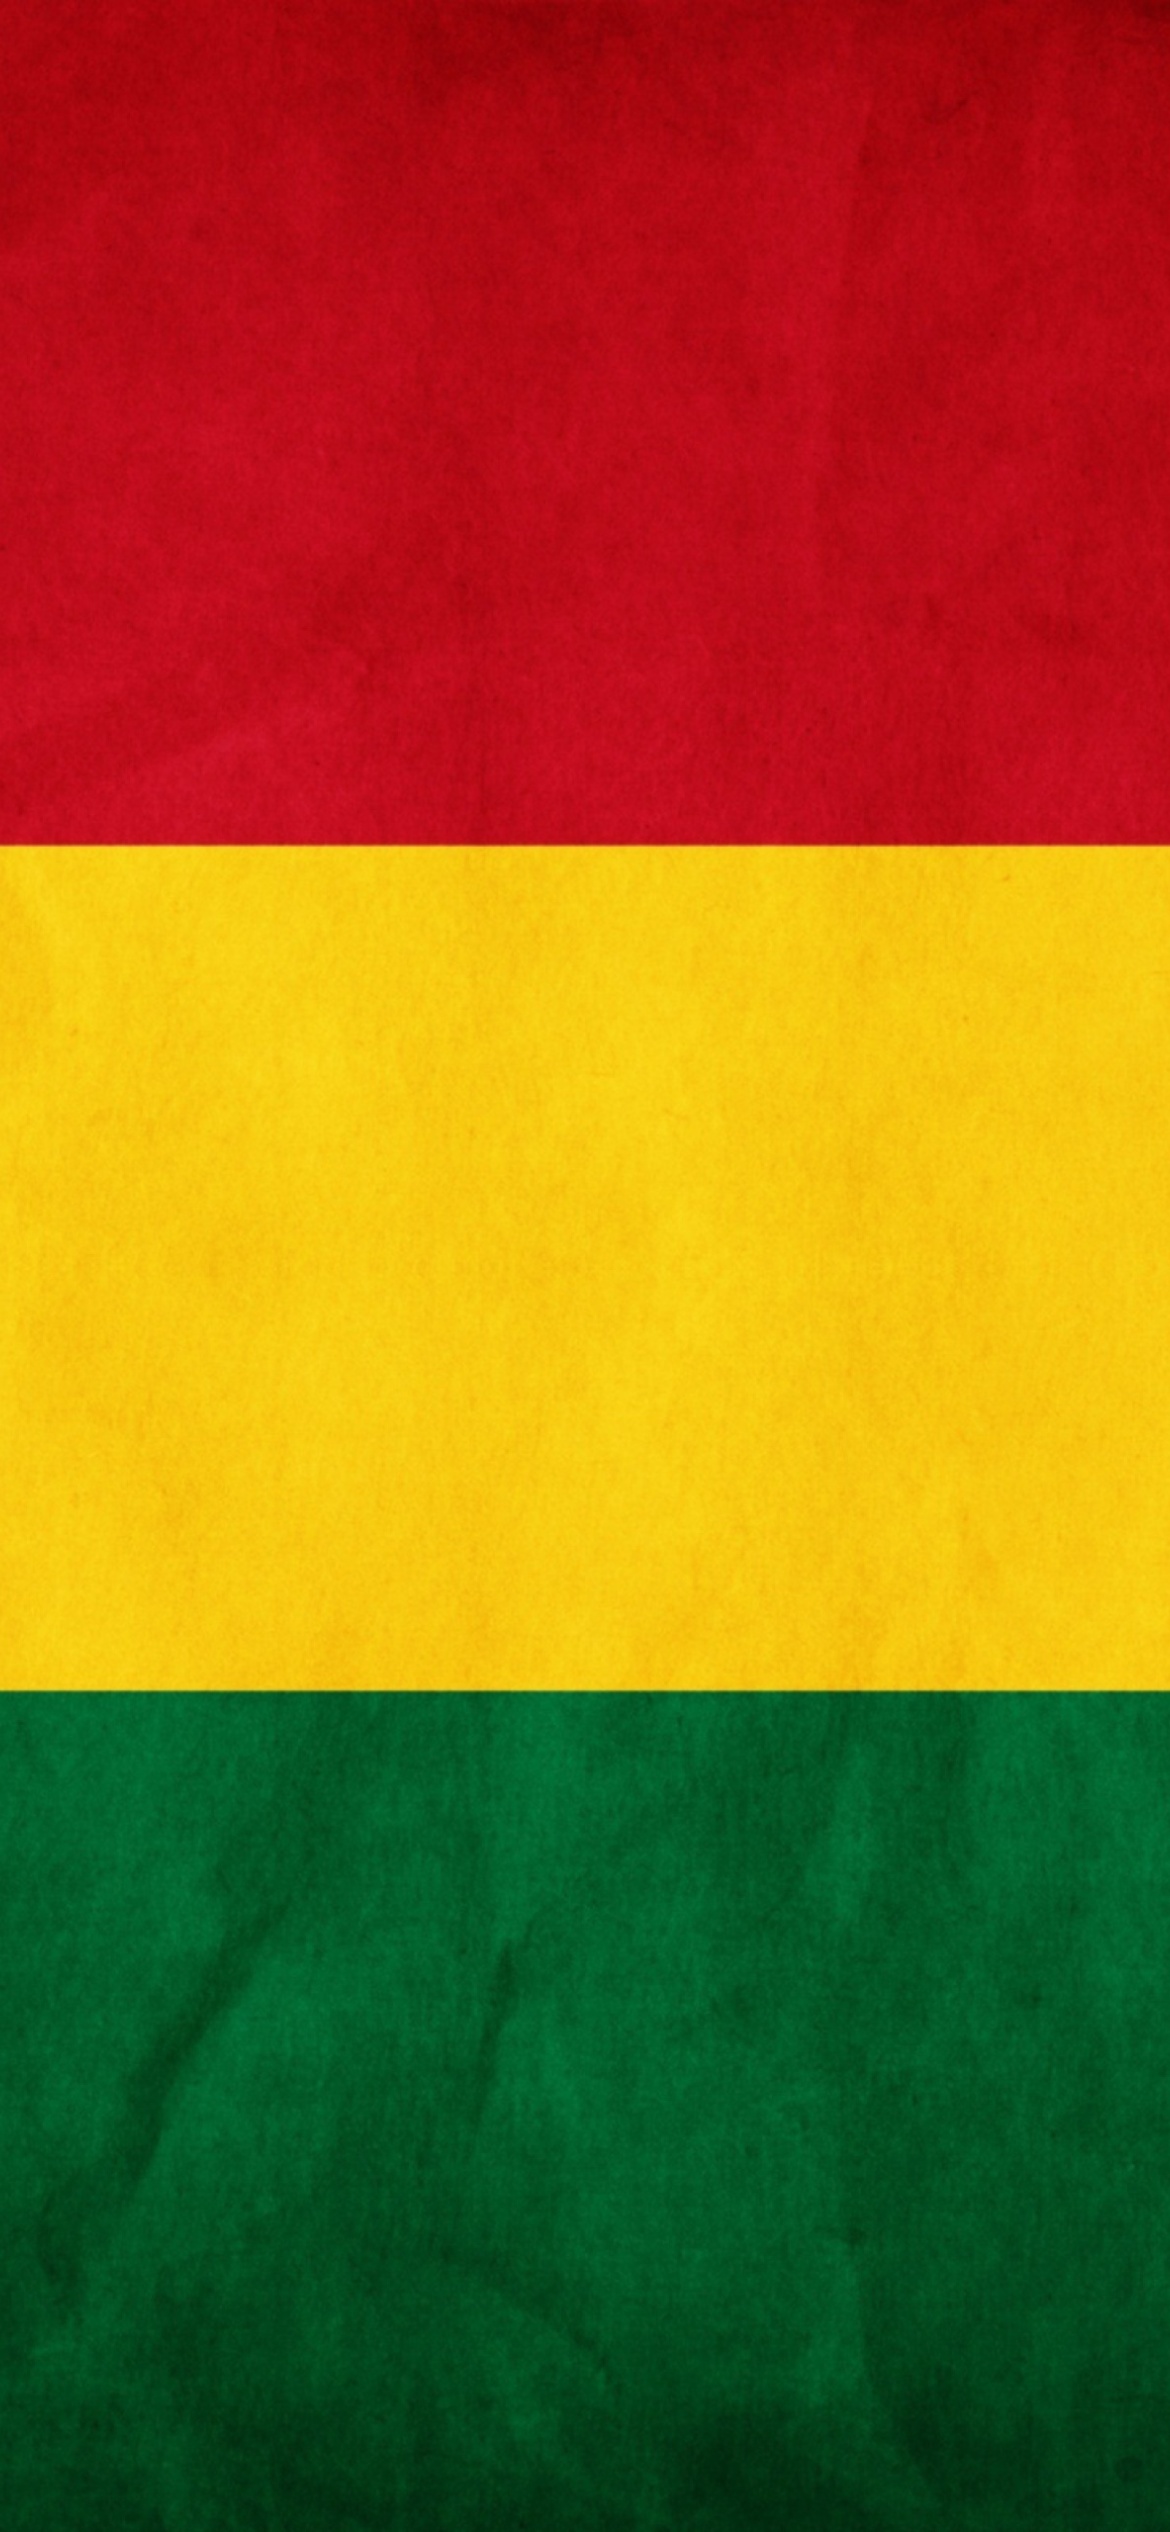 Bolivia Flag screenshot #1 1170x2532